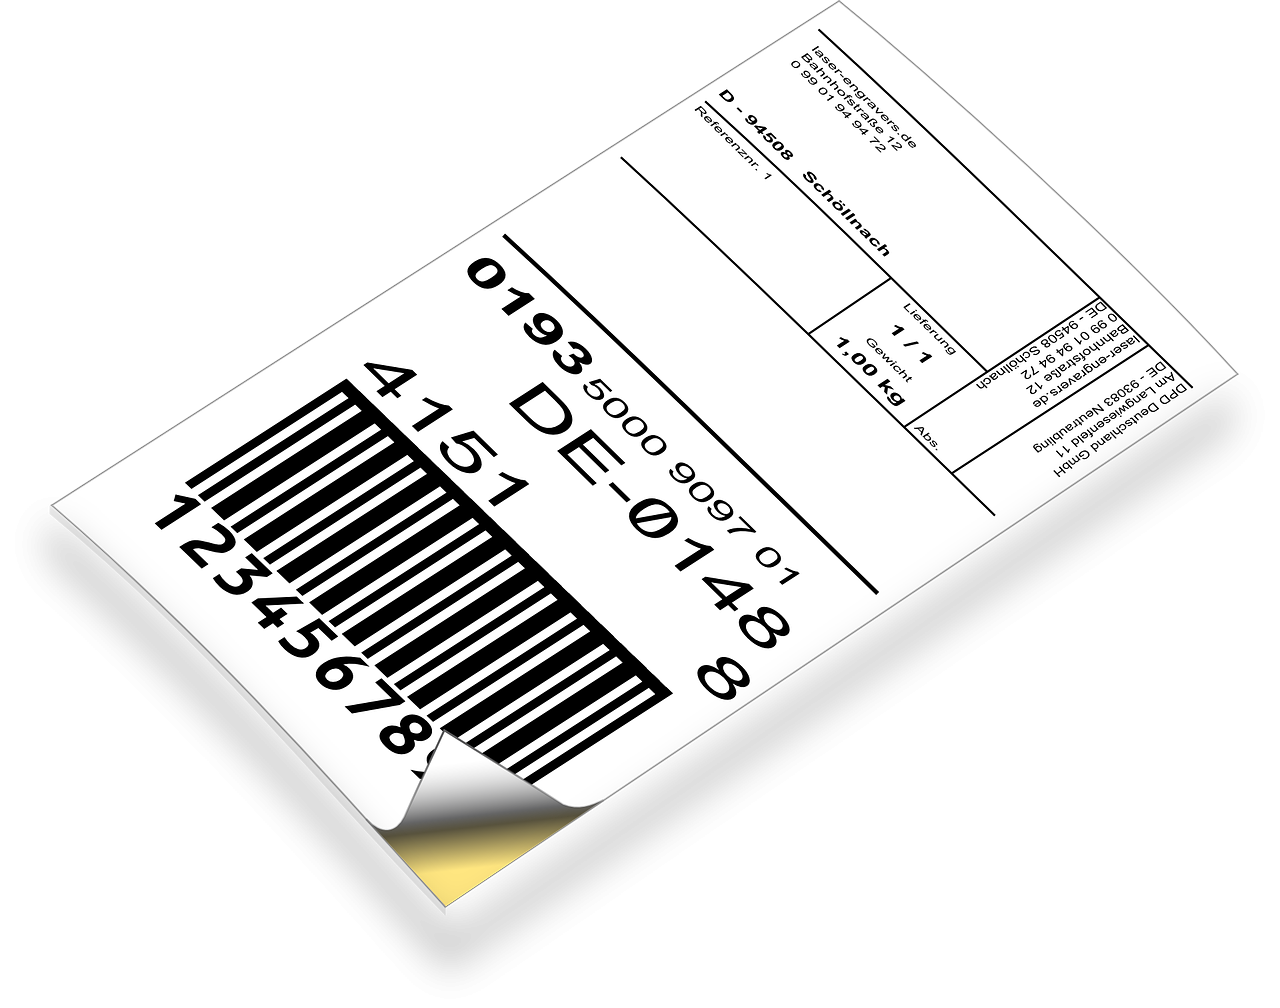 My Label software creazione etichette personalizzate